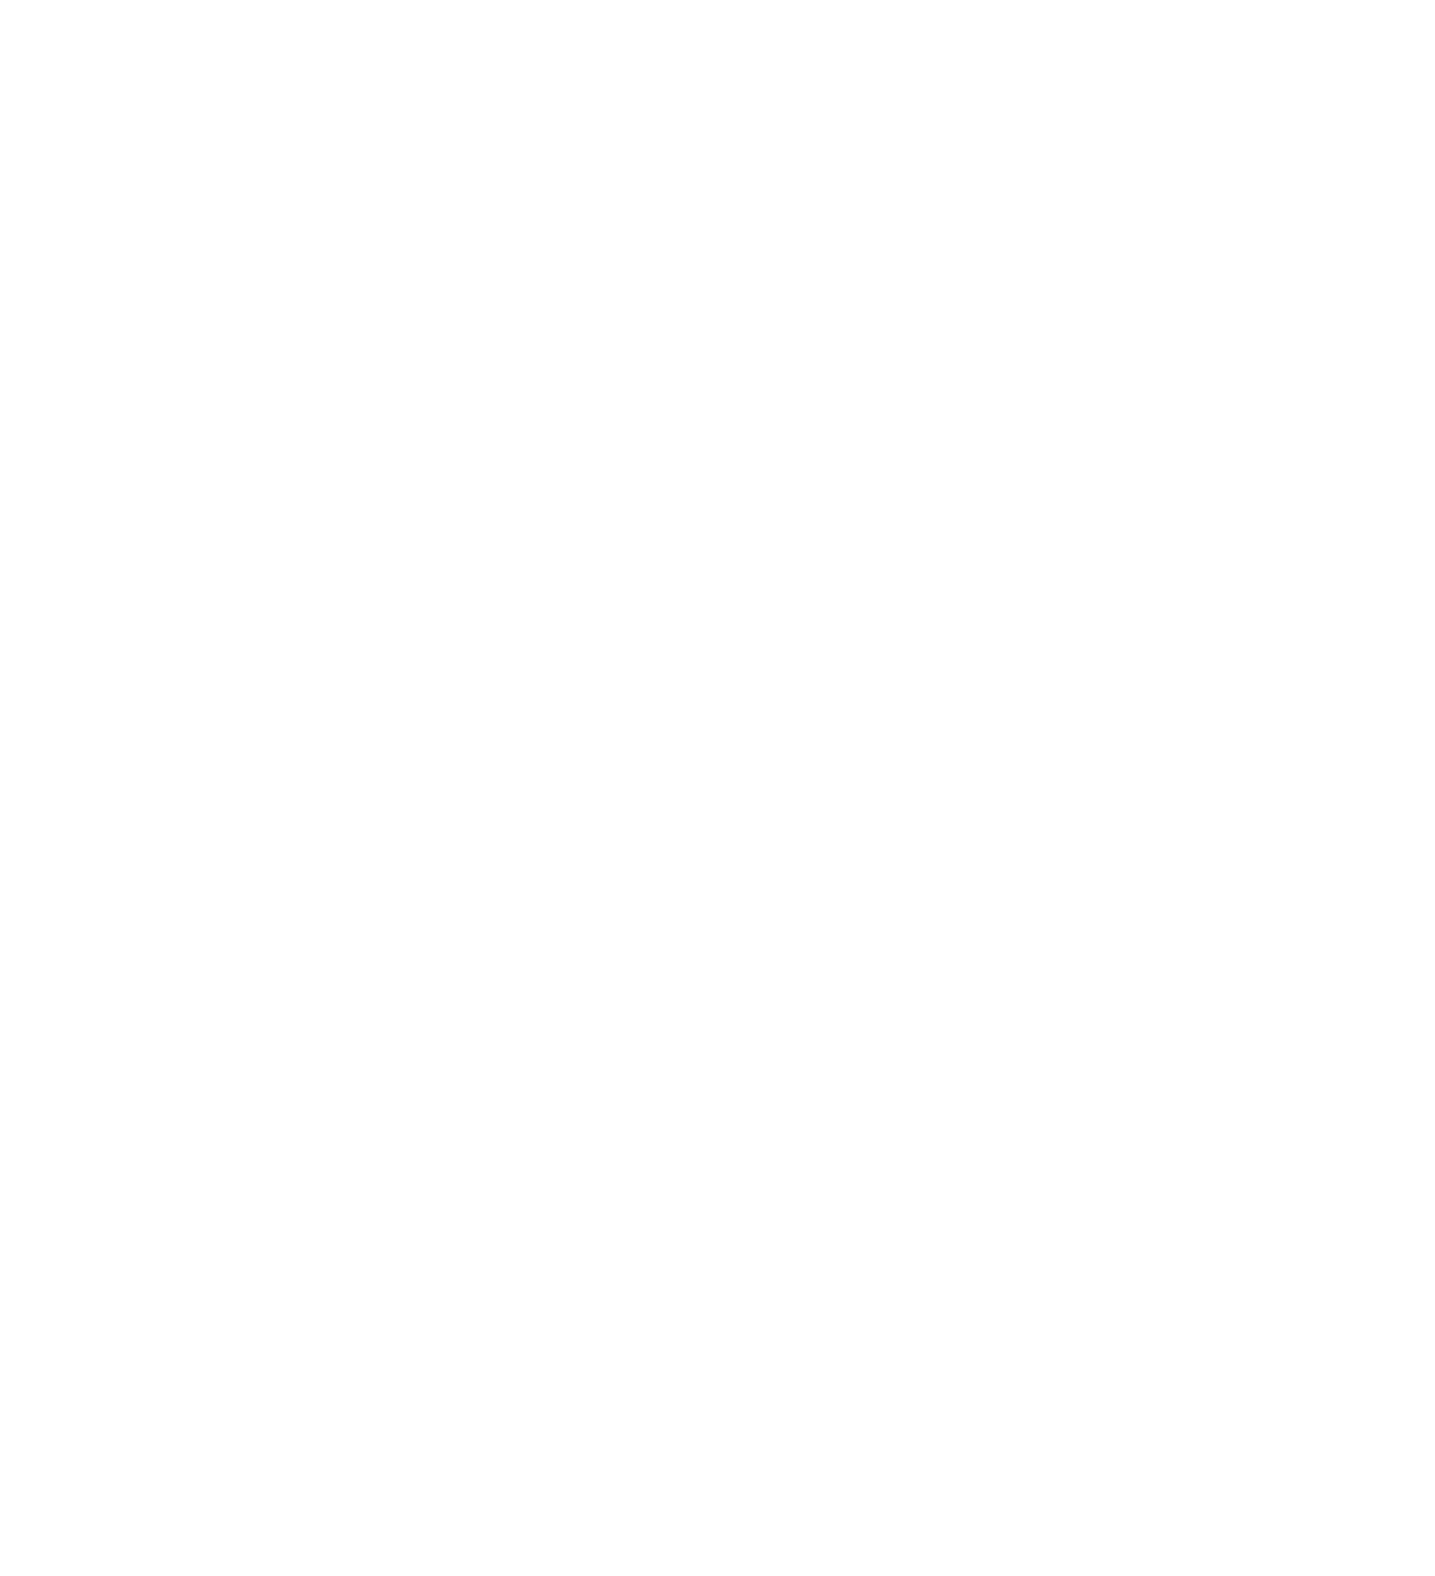 Vertical Aerospace logo pour fonds sombres (PNG transparent)